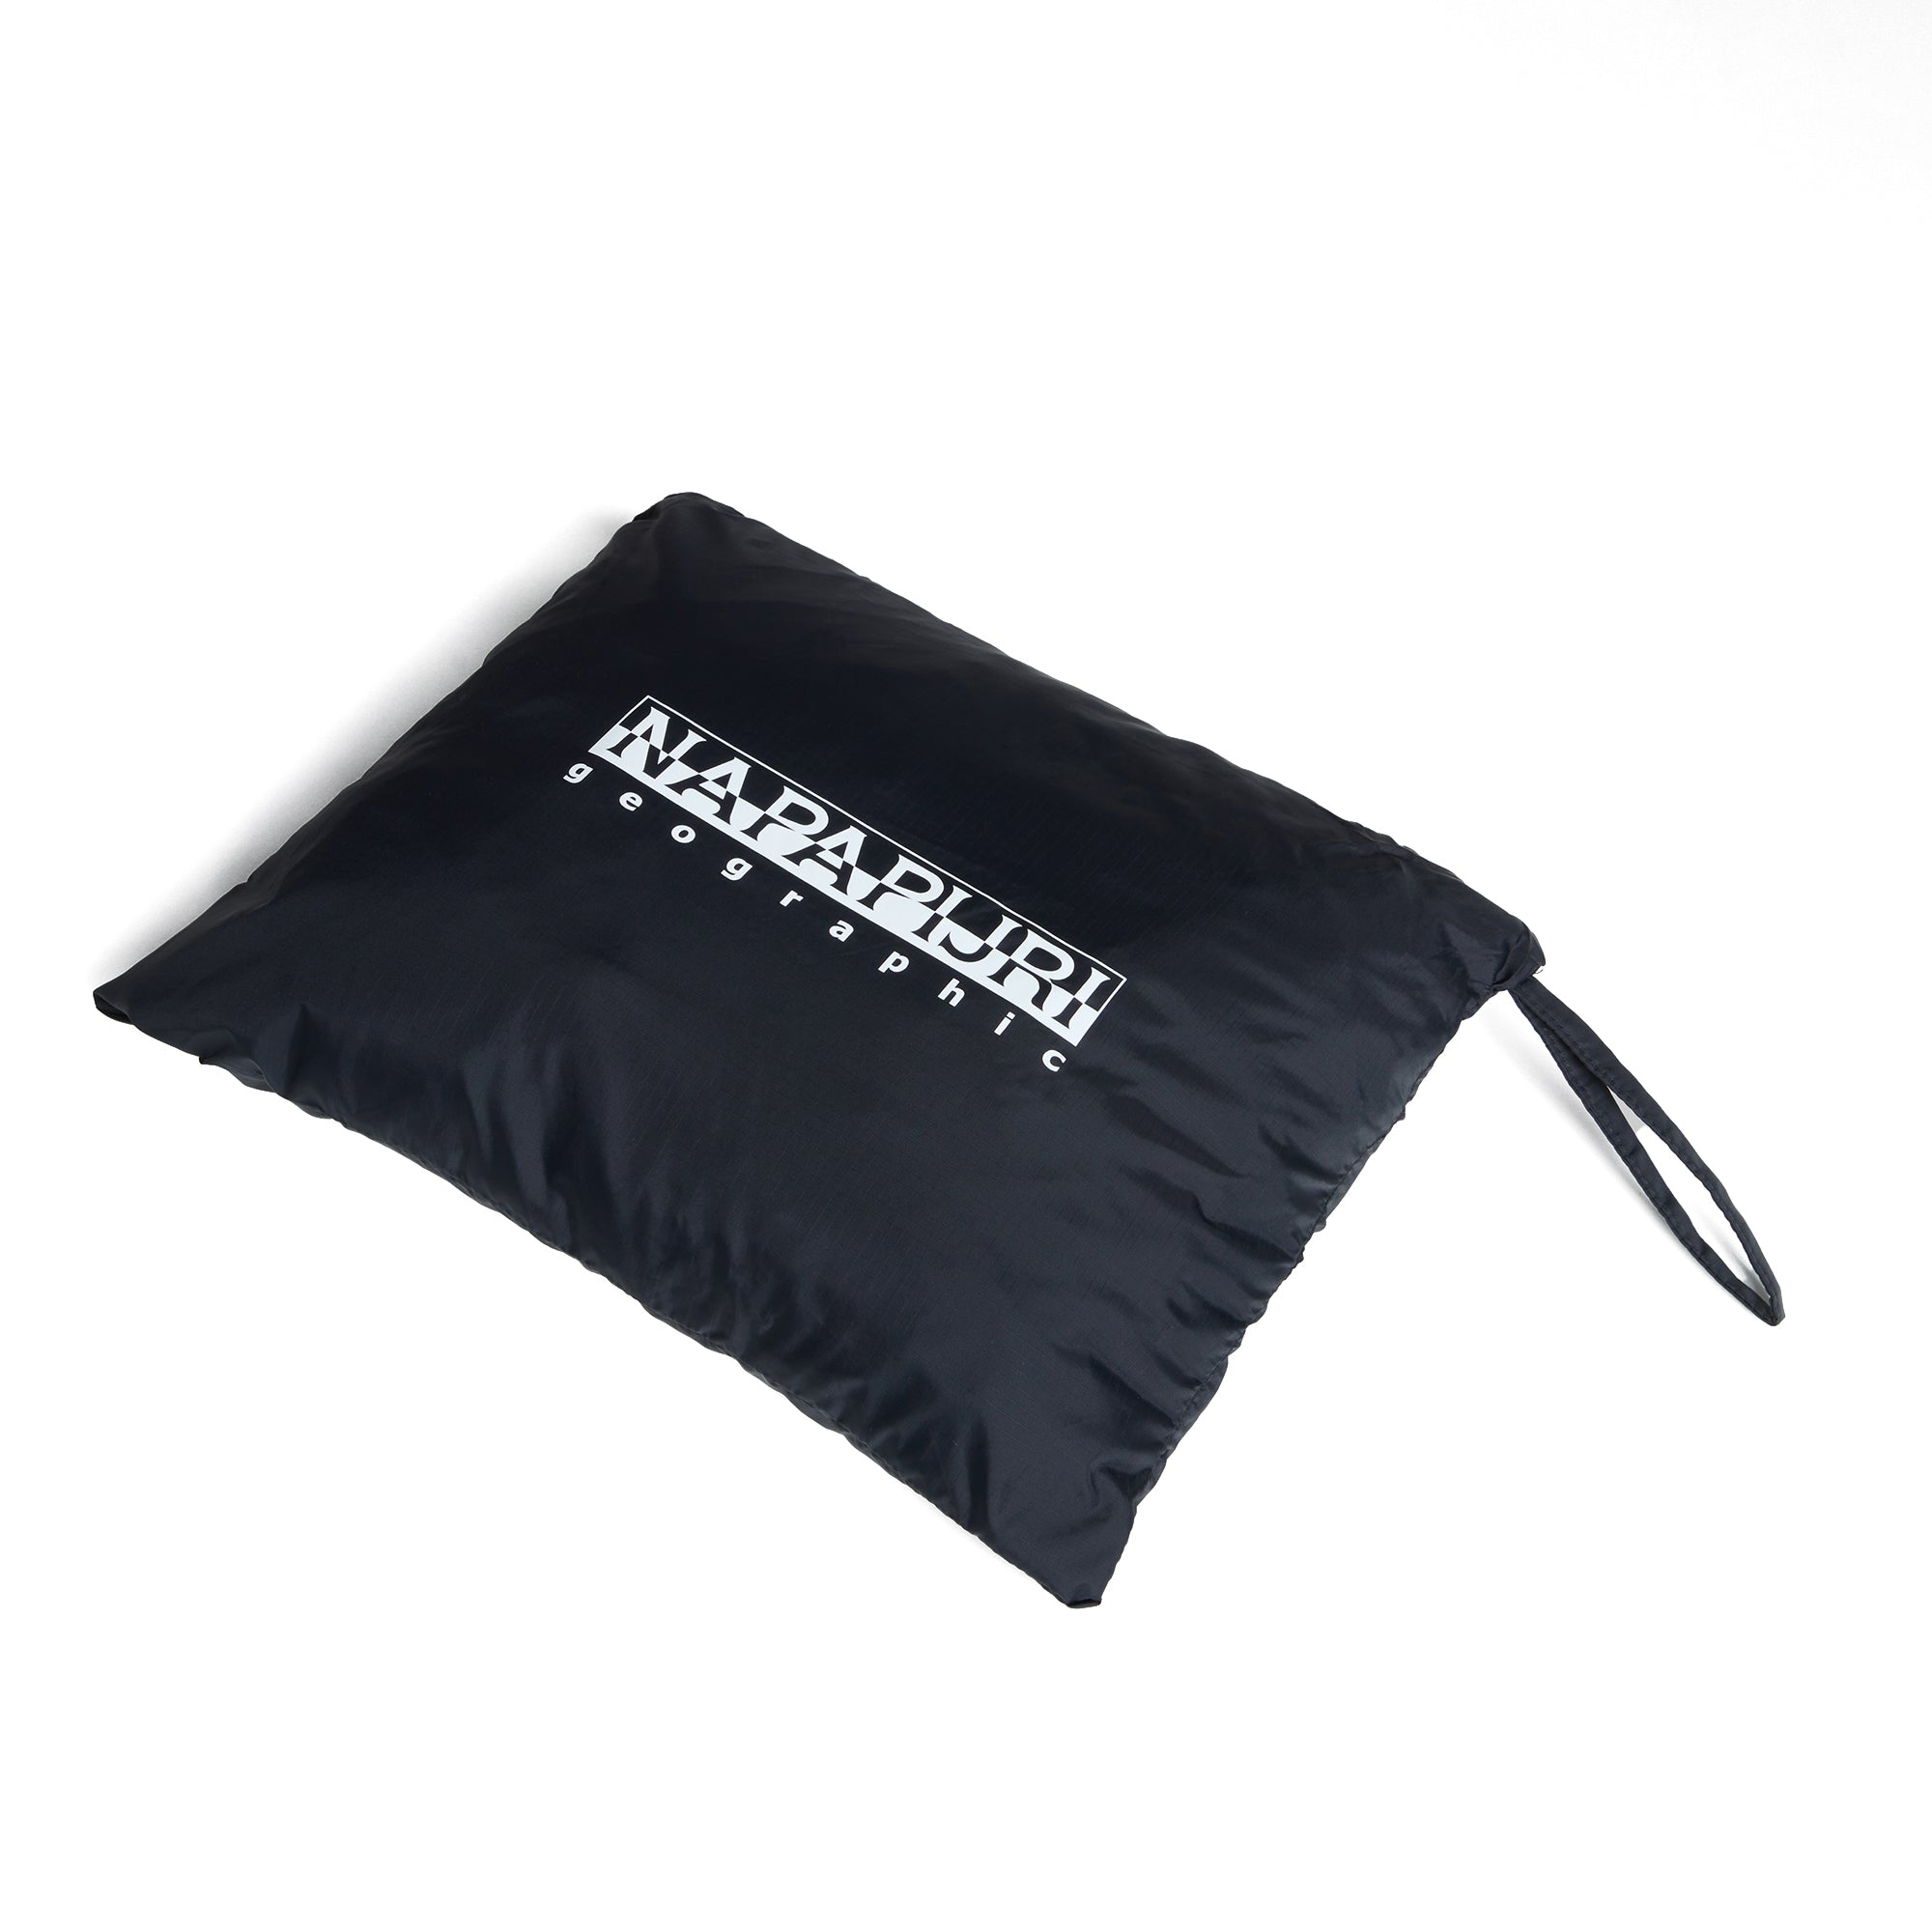 Napapijri Rainforest Pocket V2 Packable Jacket - Black